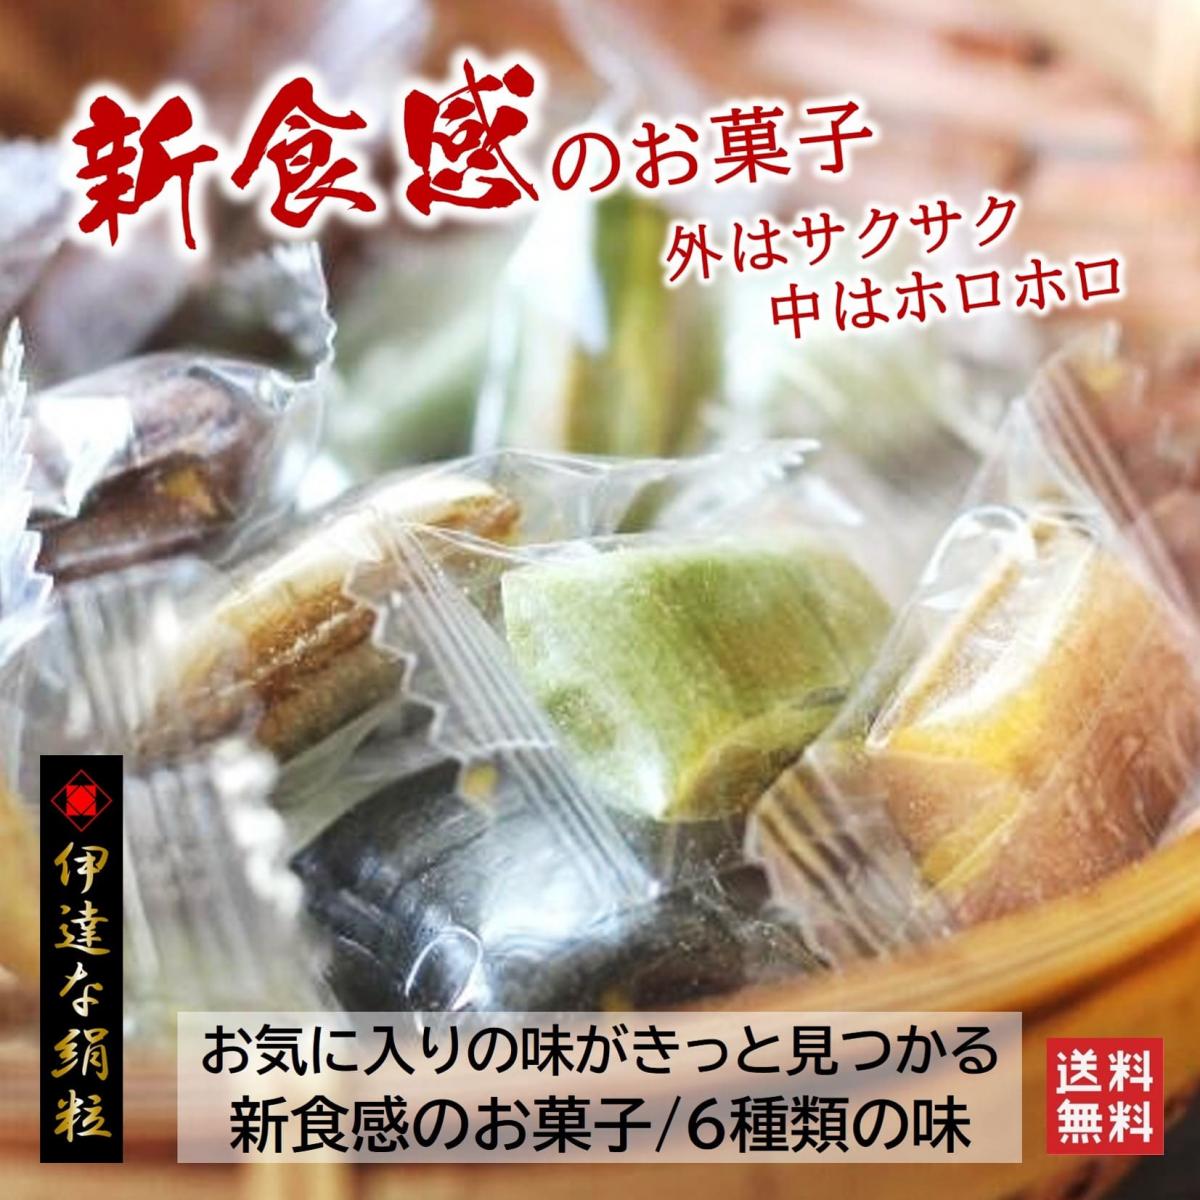 【新食感のお菓子/6袋詰め合せ】6種類の味くらべサムネイル